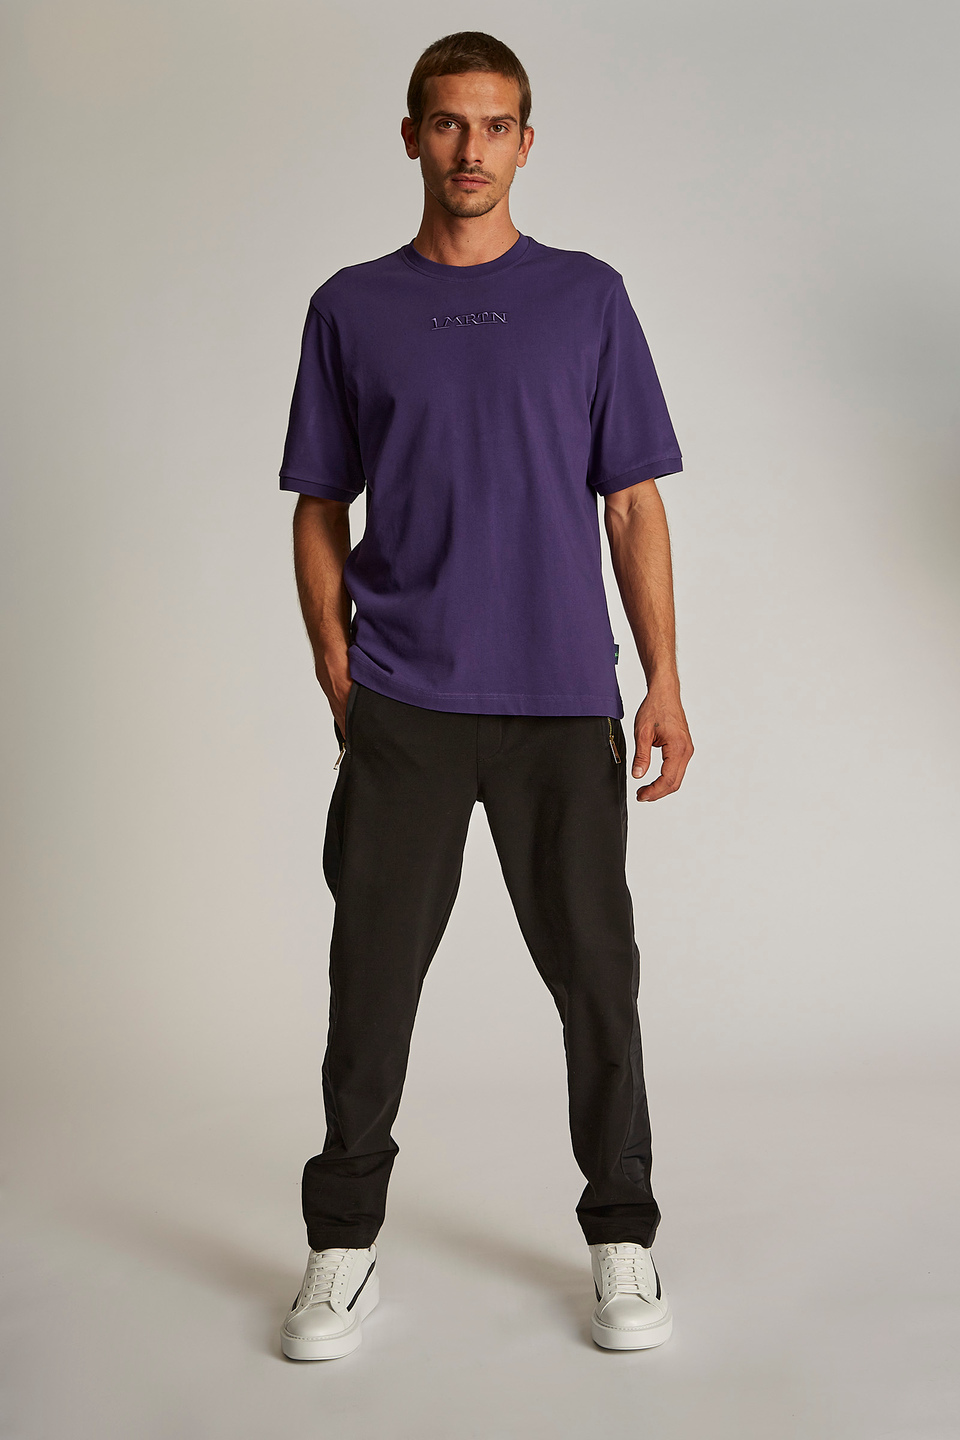 Pantalone da uomo modello jogger in cotone elasticizzato regular fit | La Martina - Official Online Shop